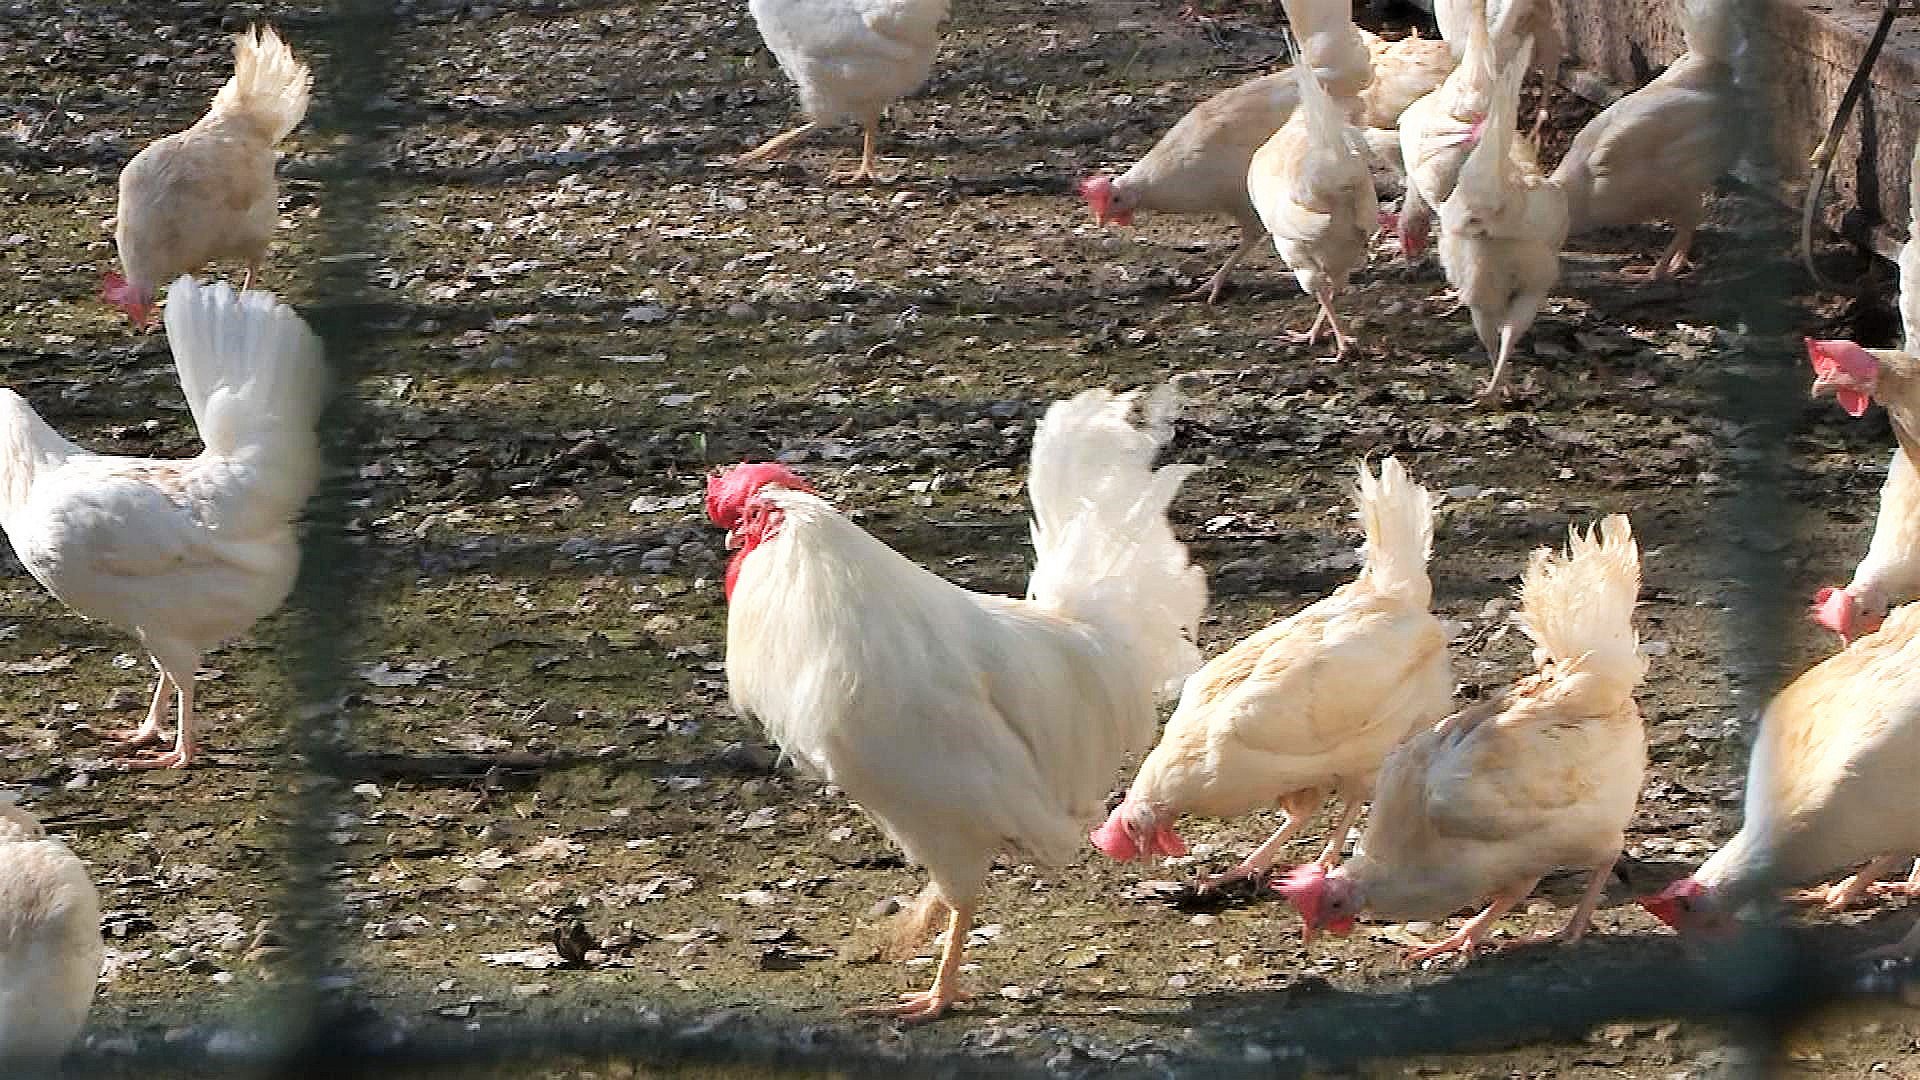 klokke kor fuldstændig Slut med restriktioner: 80.000 høns kom atter ud under åben himmel | TV  MIDTVEST